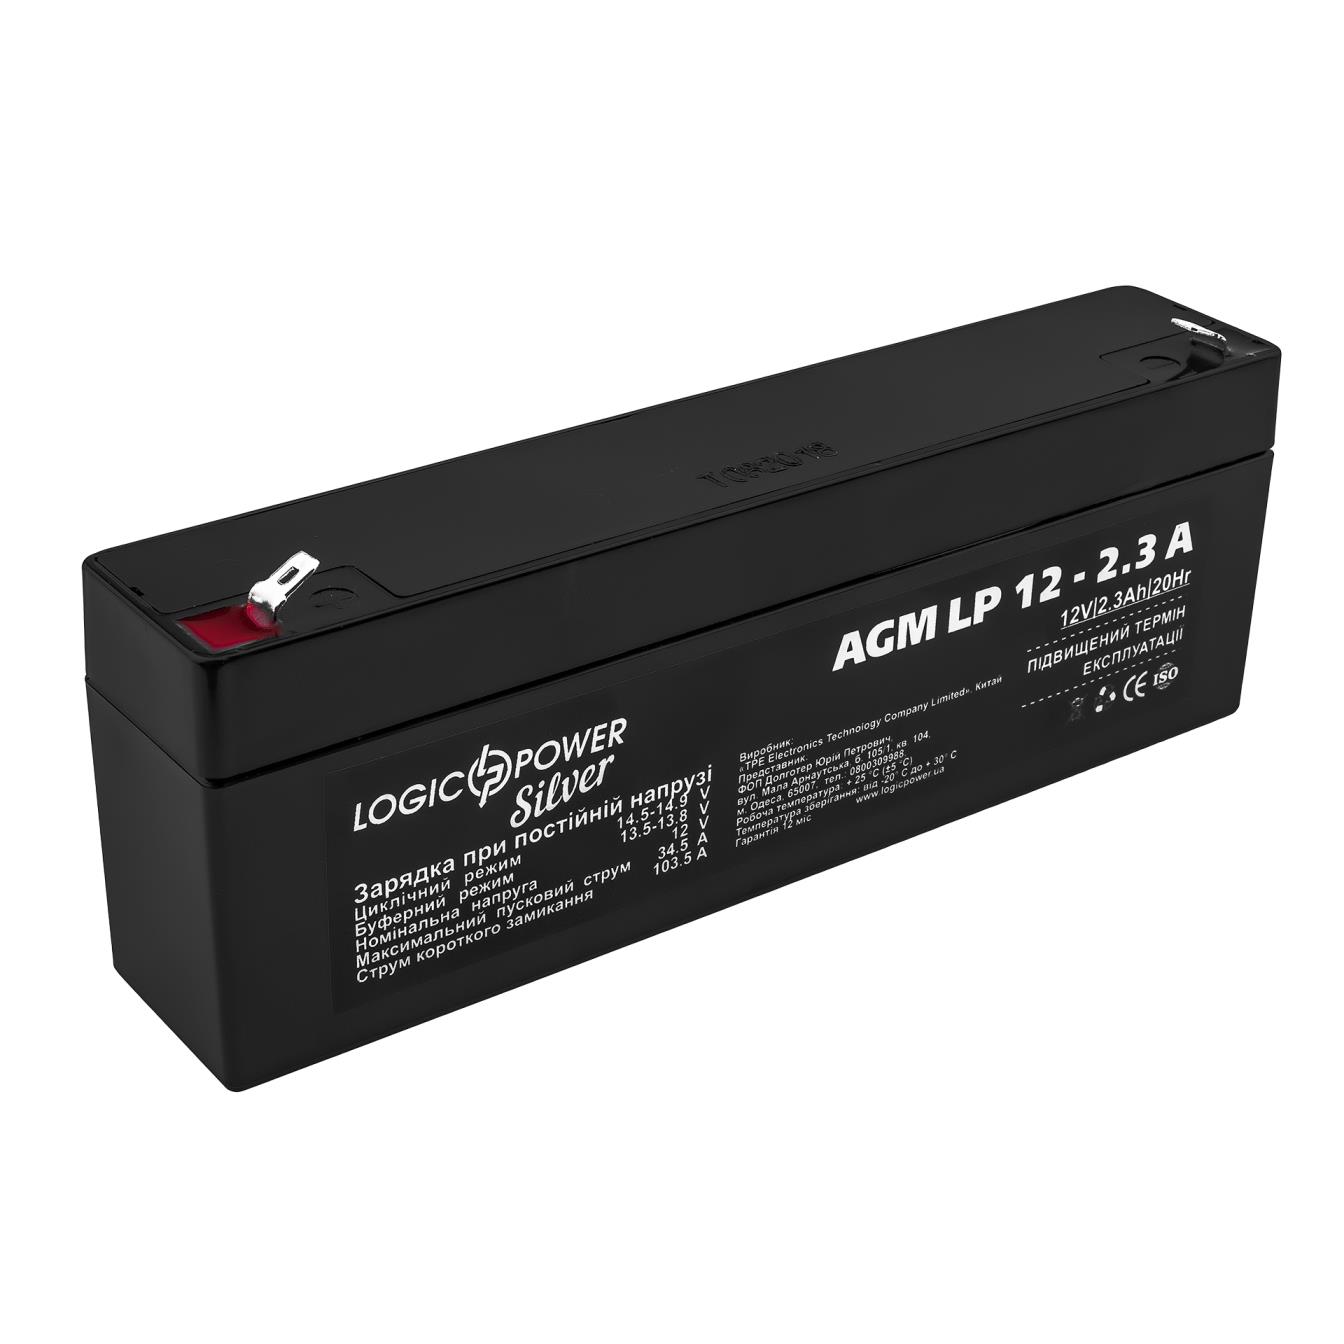 LogicPower AGM LP 12V - 2.3 Ah Silver (3224)